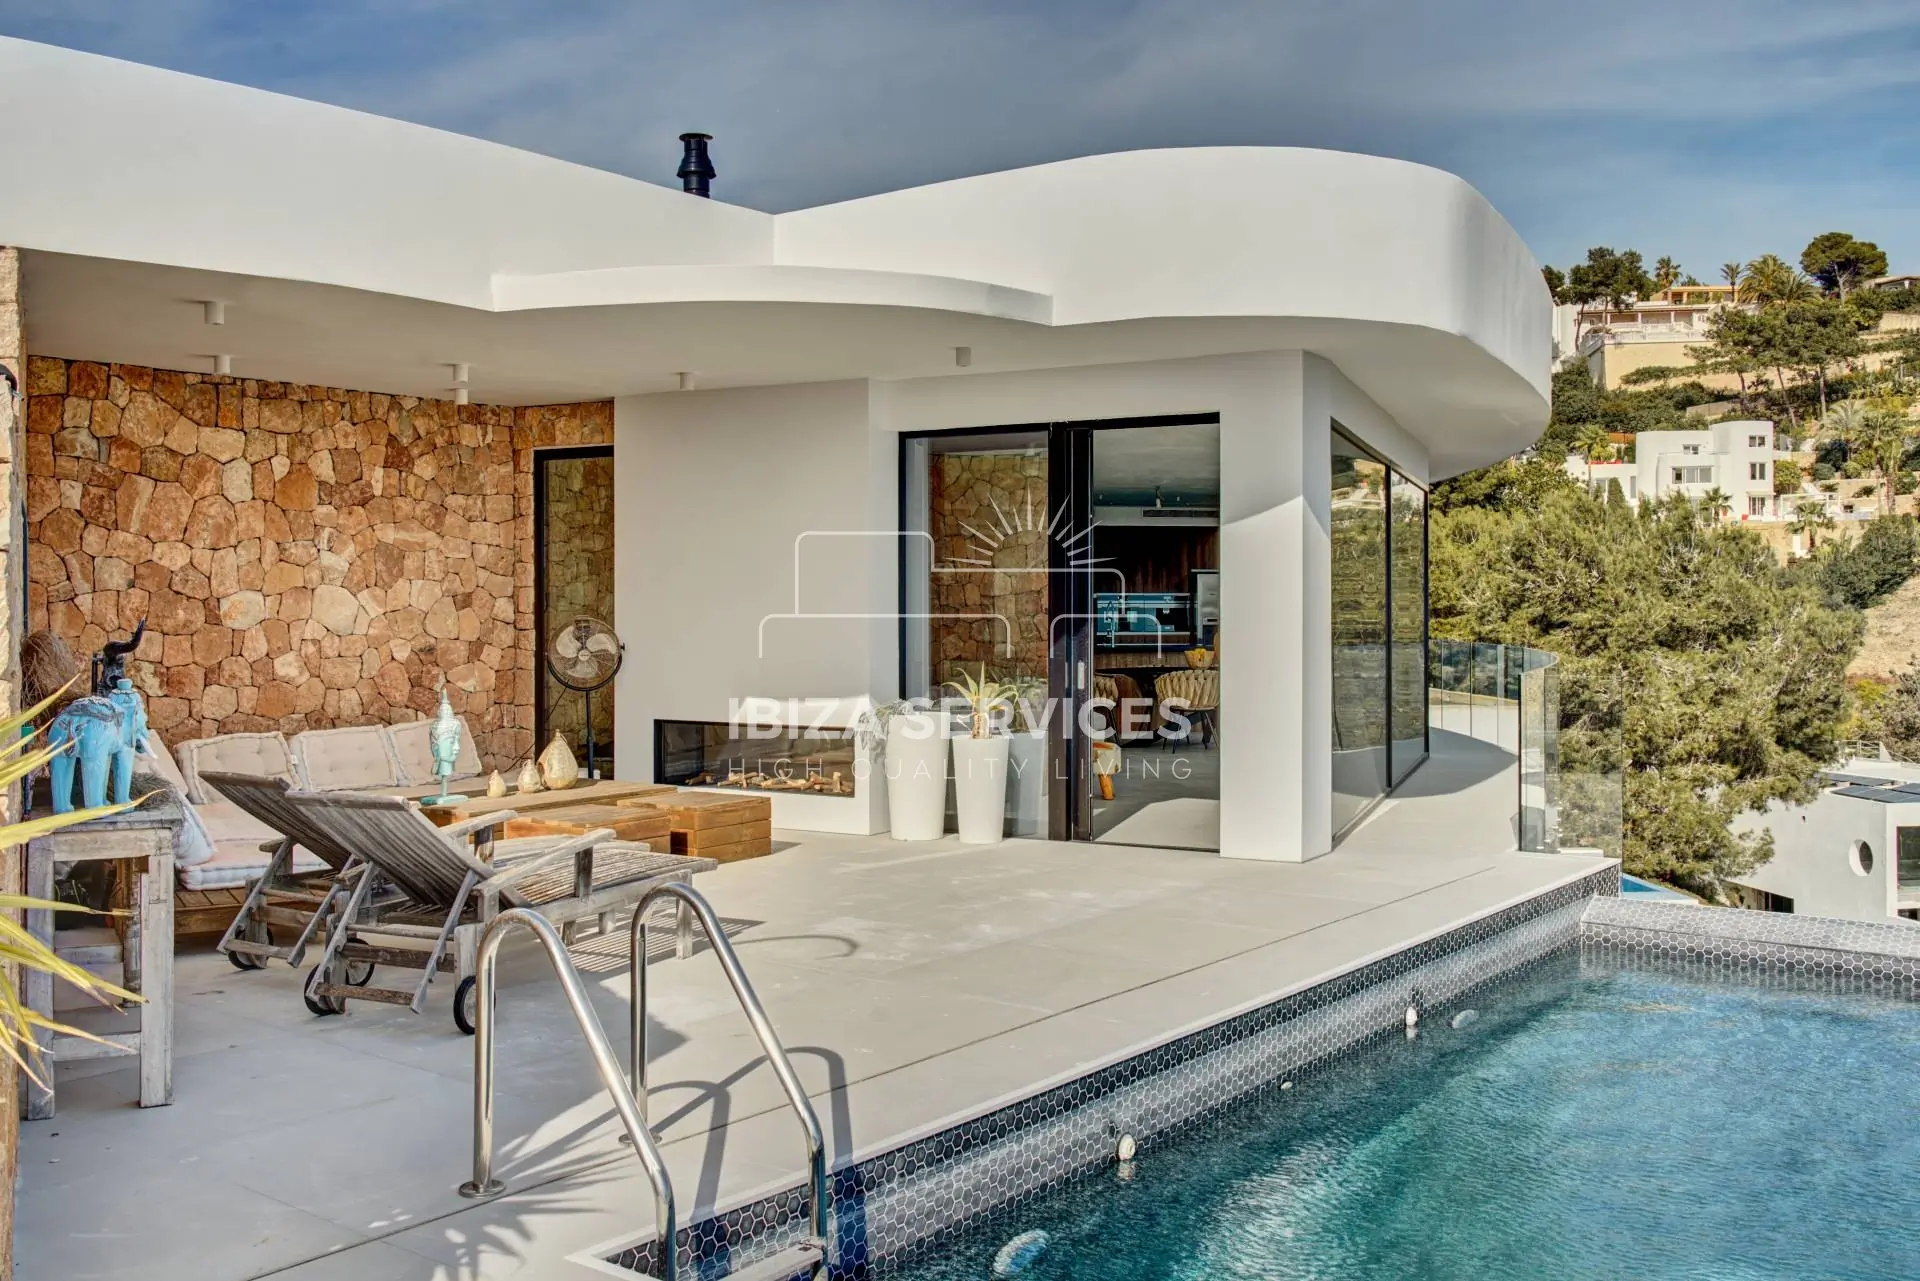 Prachtige villa met 6 slaapkamers in het exclusieve Can Furnet, Ibiza, met adembenemend uitzicht op zee te koop.